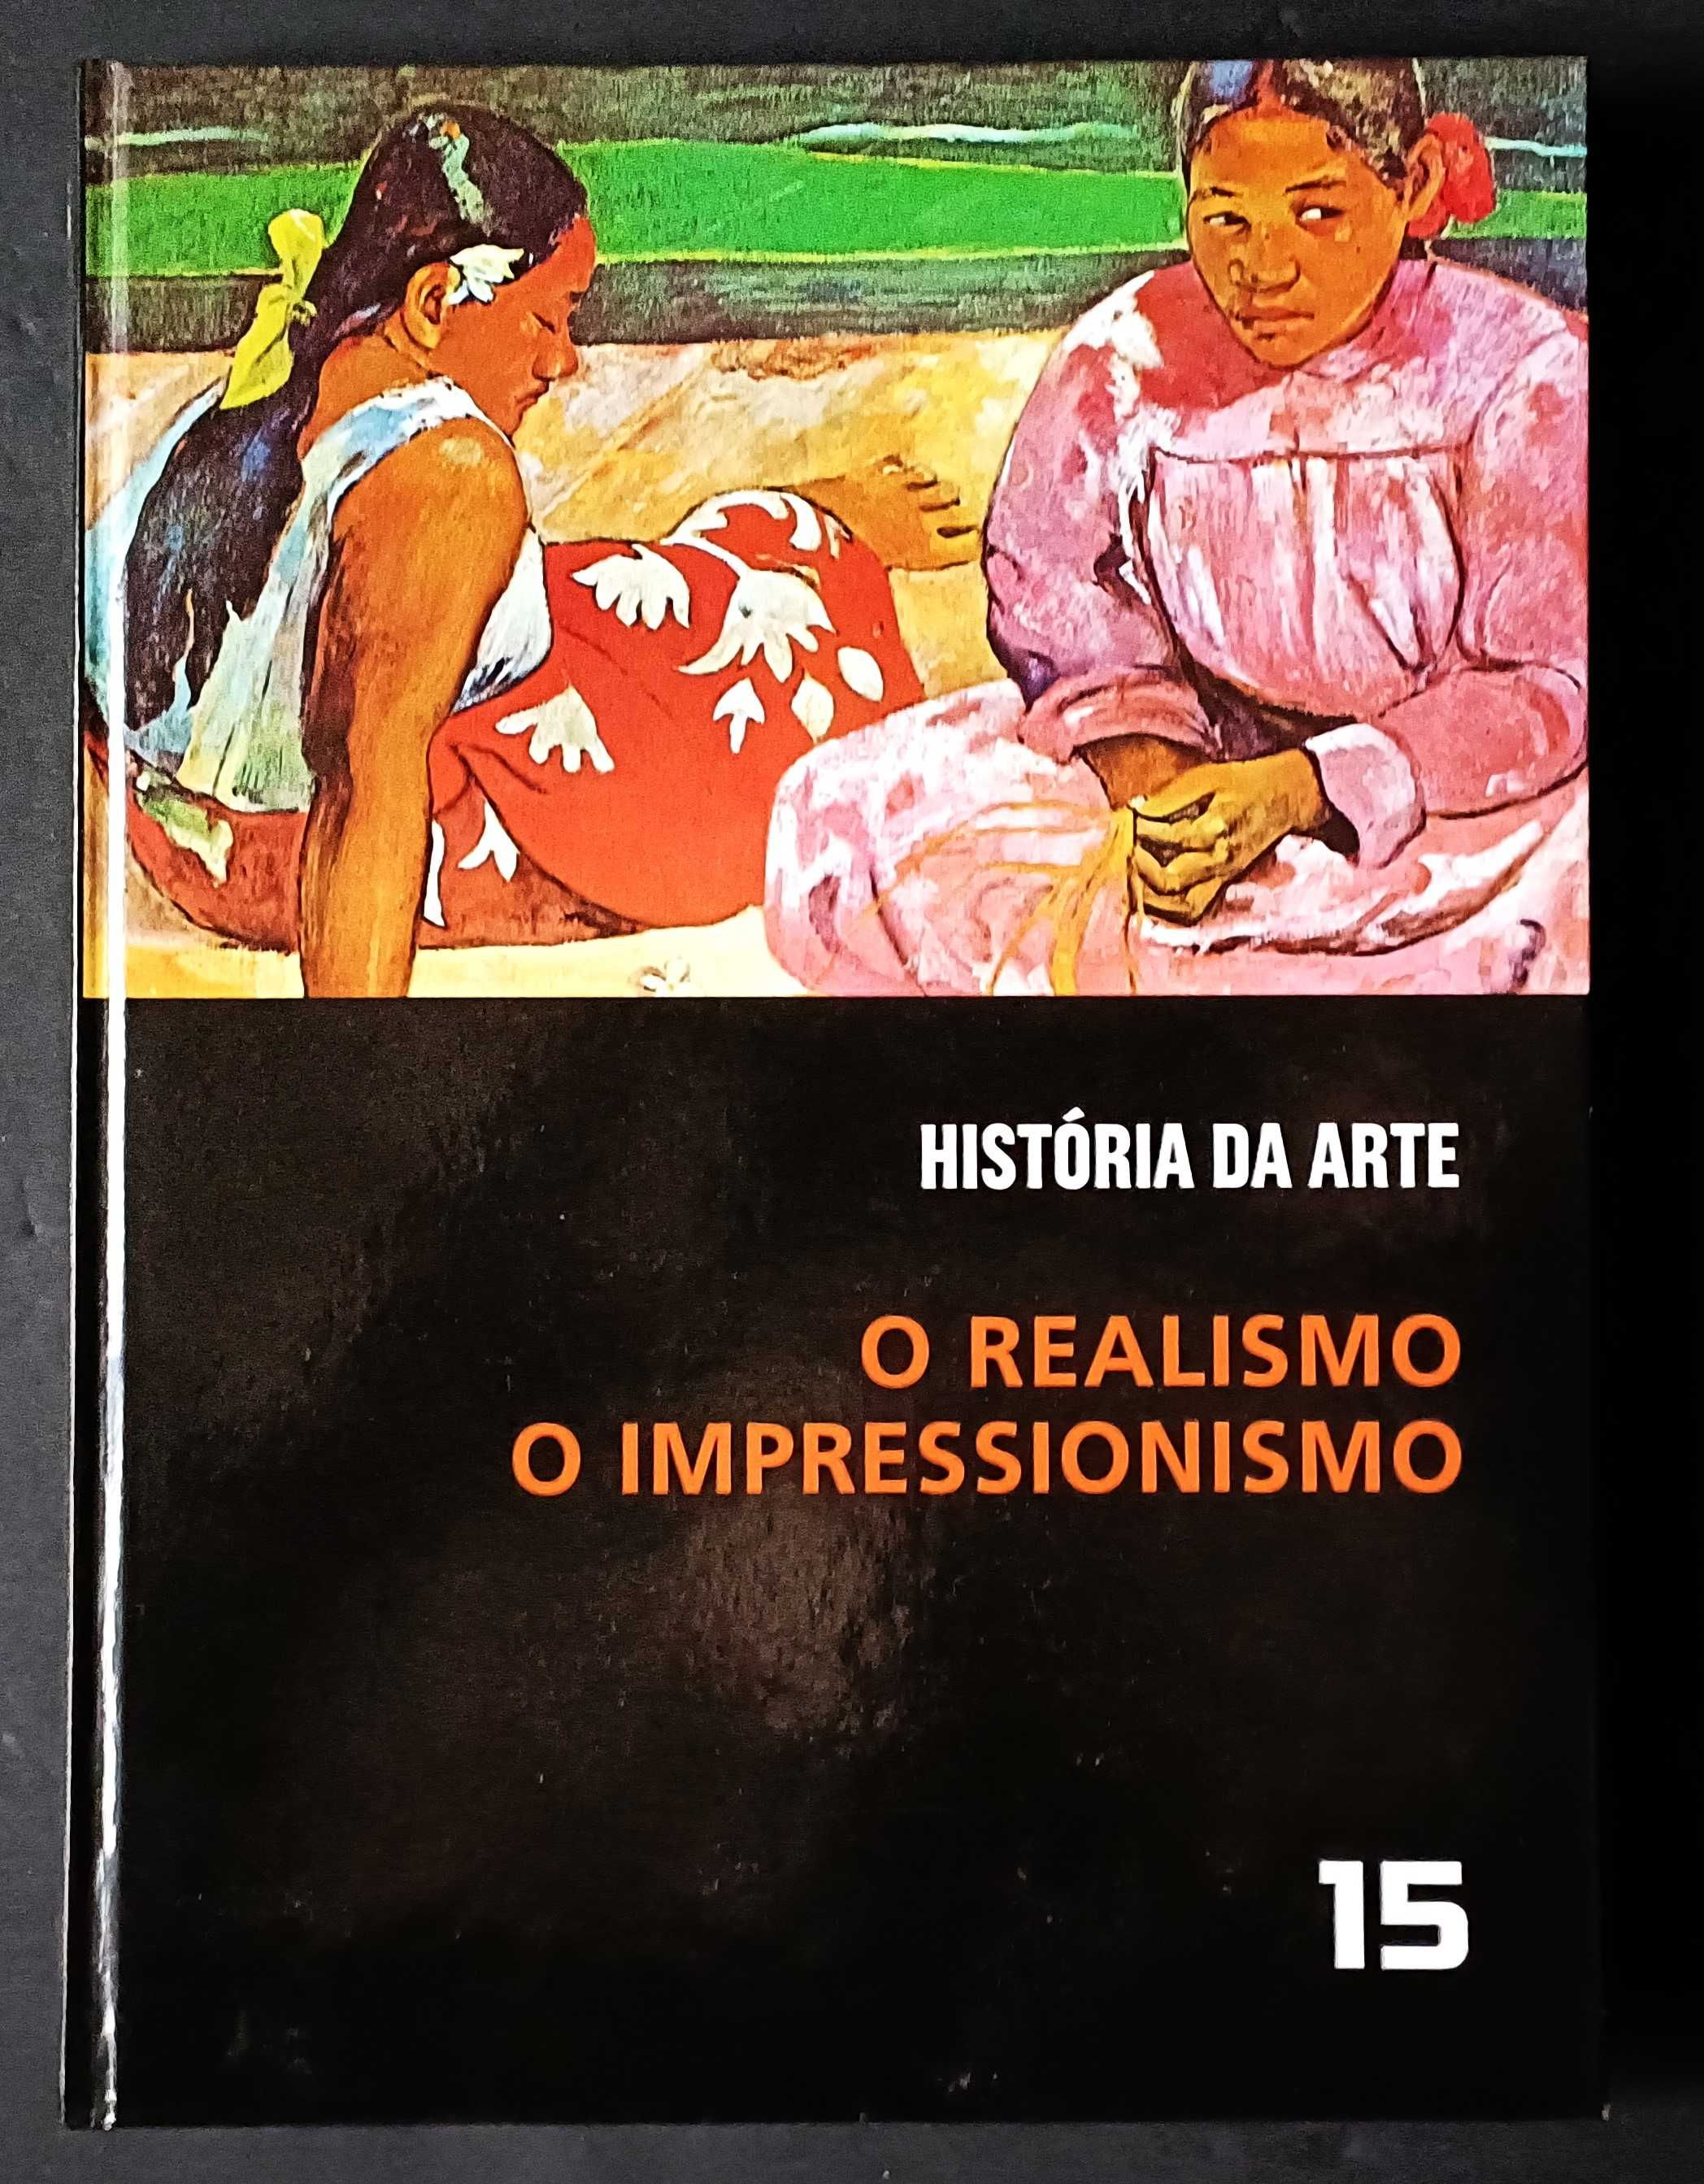 Helena Abreu, António Gedeão, Arte. Dois livros por apenas 15€!